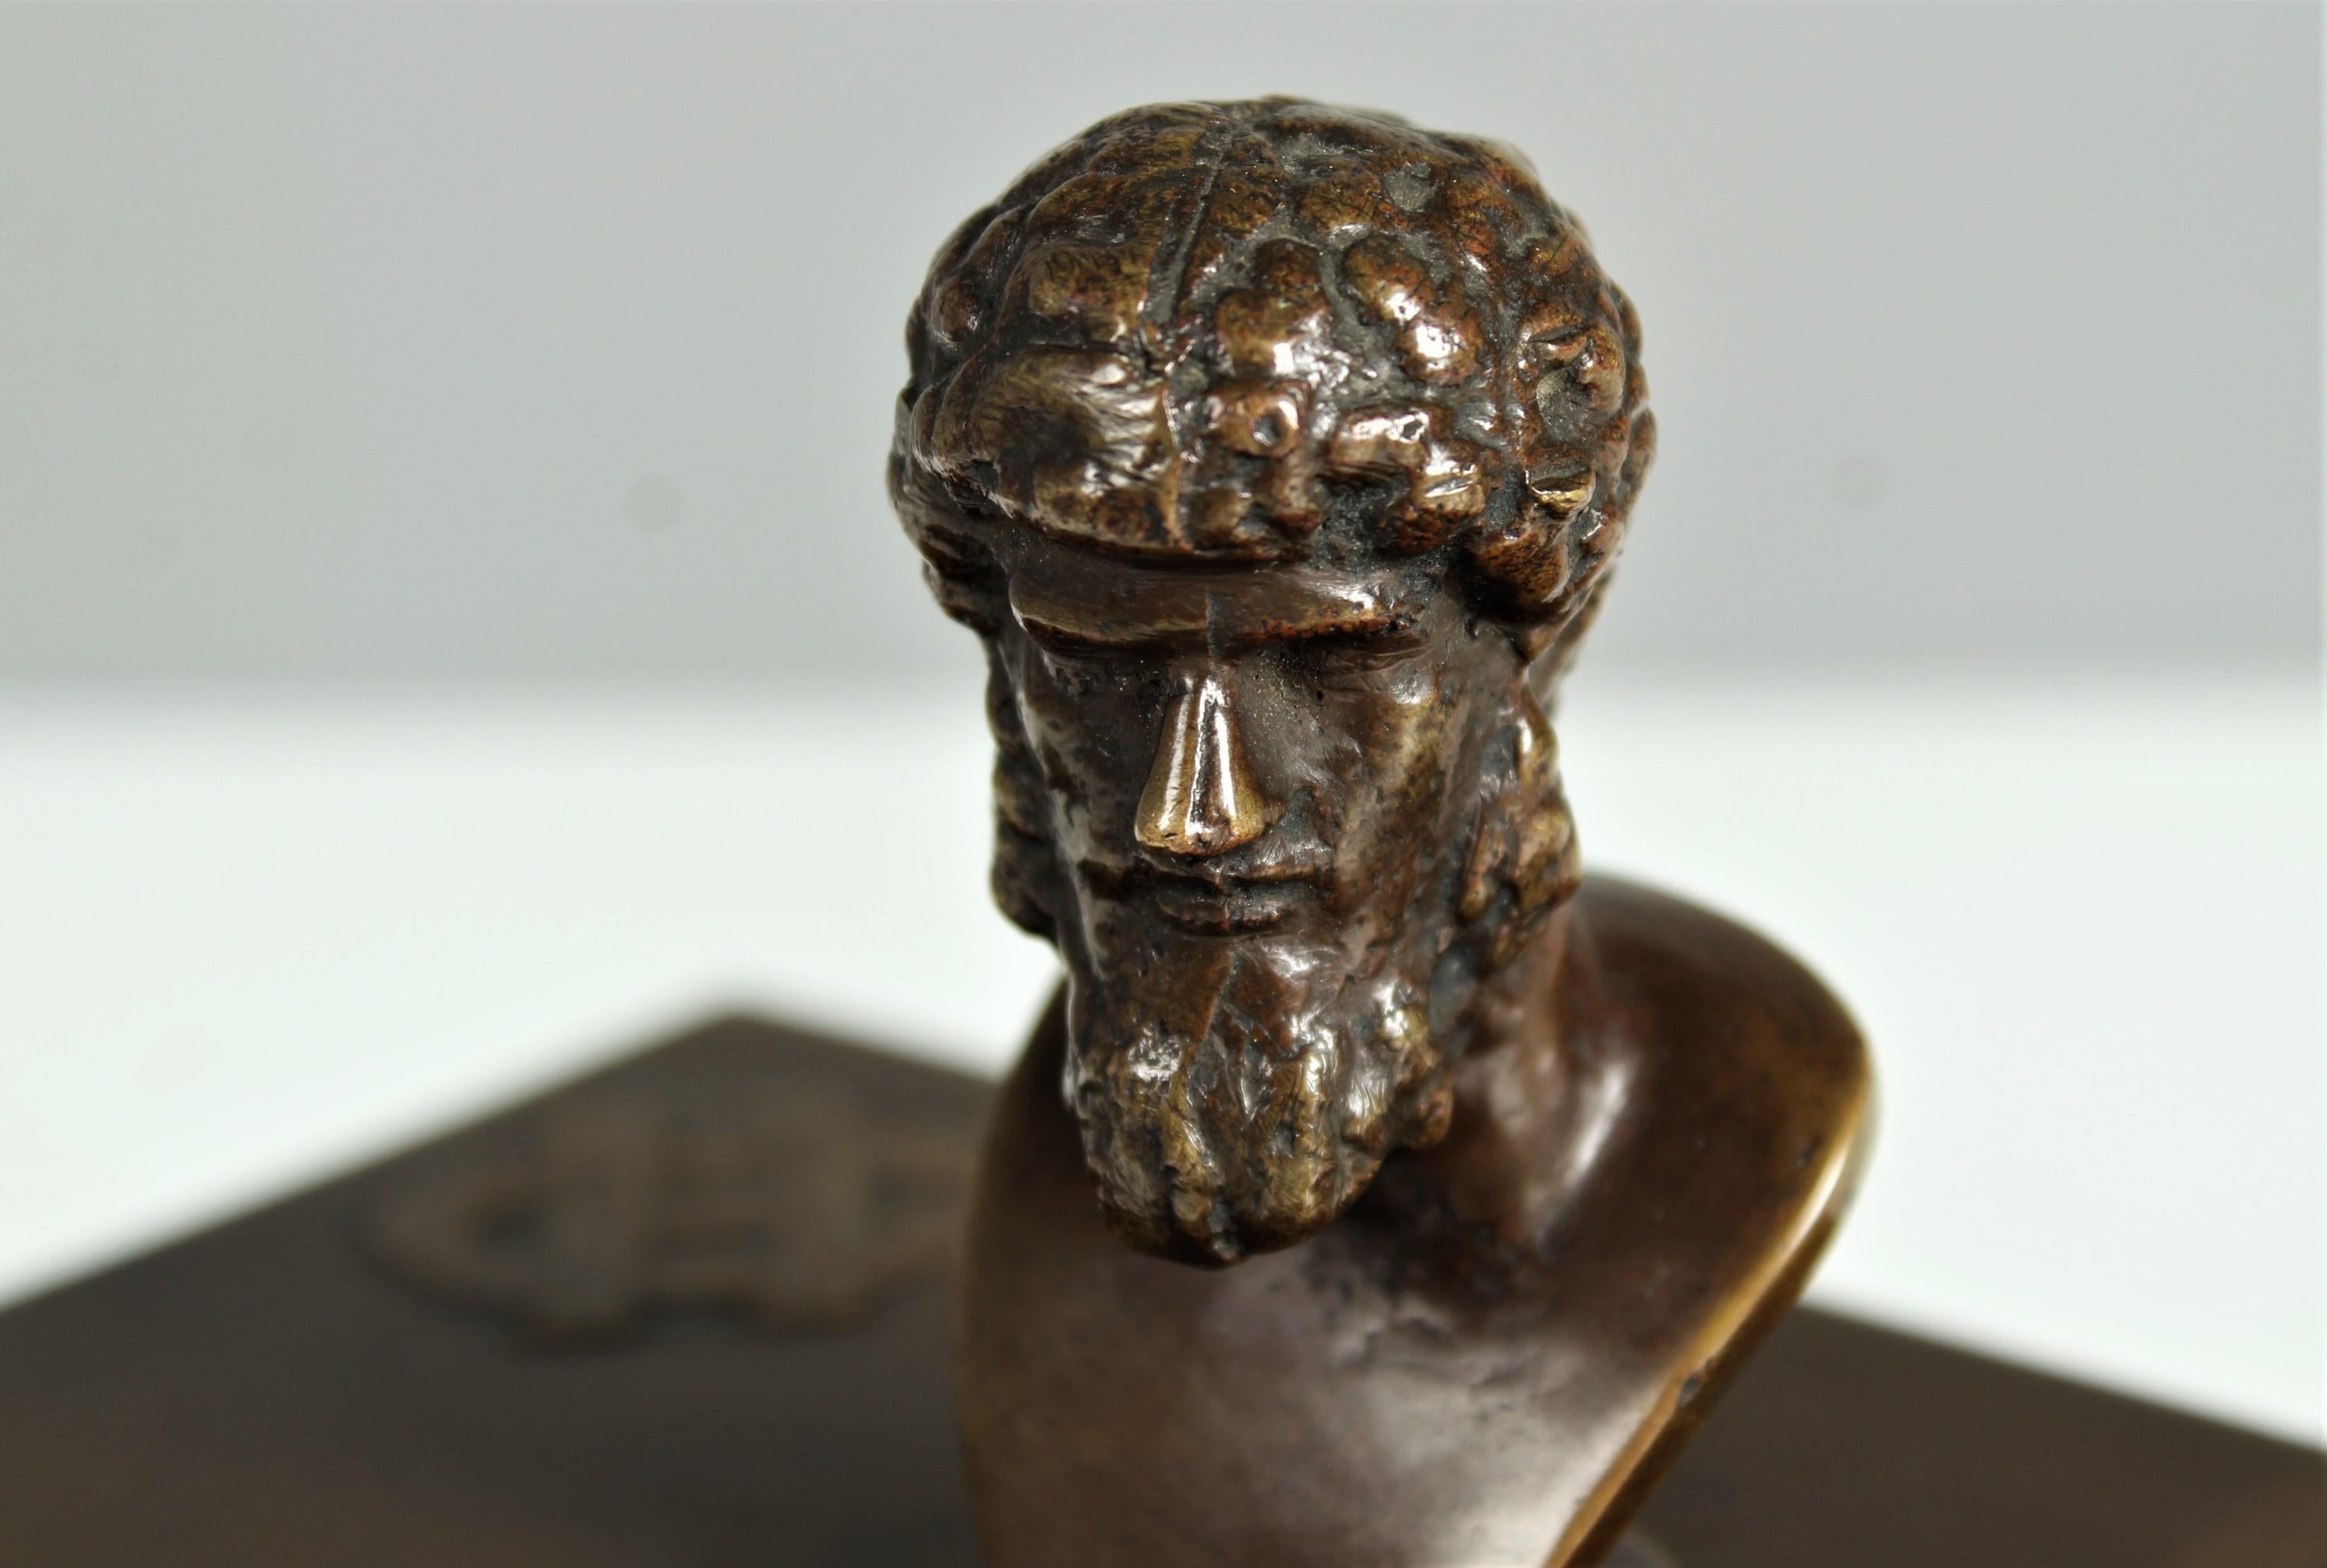 Außergewöhnliche Löschwiege aus schwerer Bronze.
Der Griff ist der Büste eines Mannes nachempfunden.
Auf der Oberseite sind die Initialen des Künstlers 